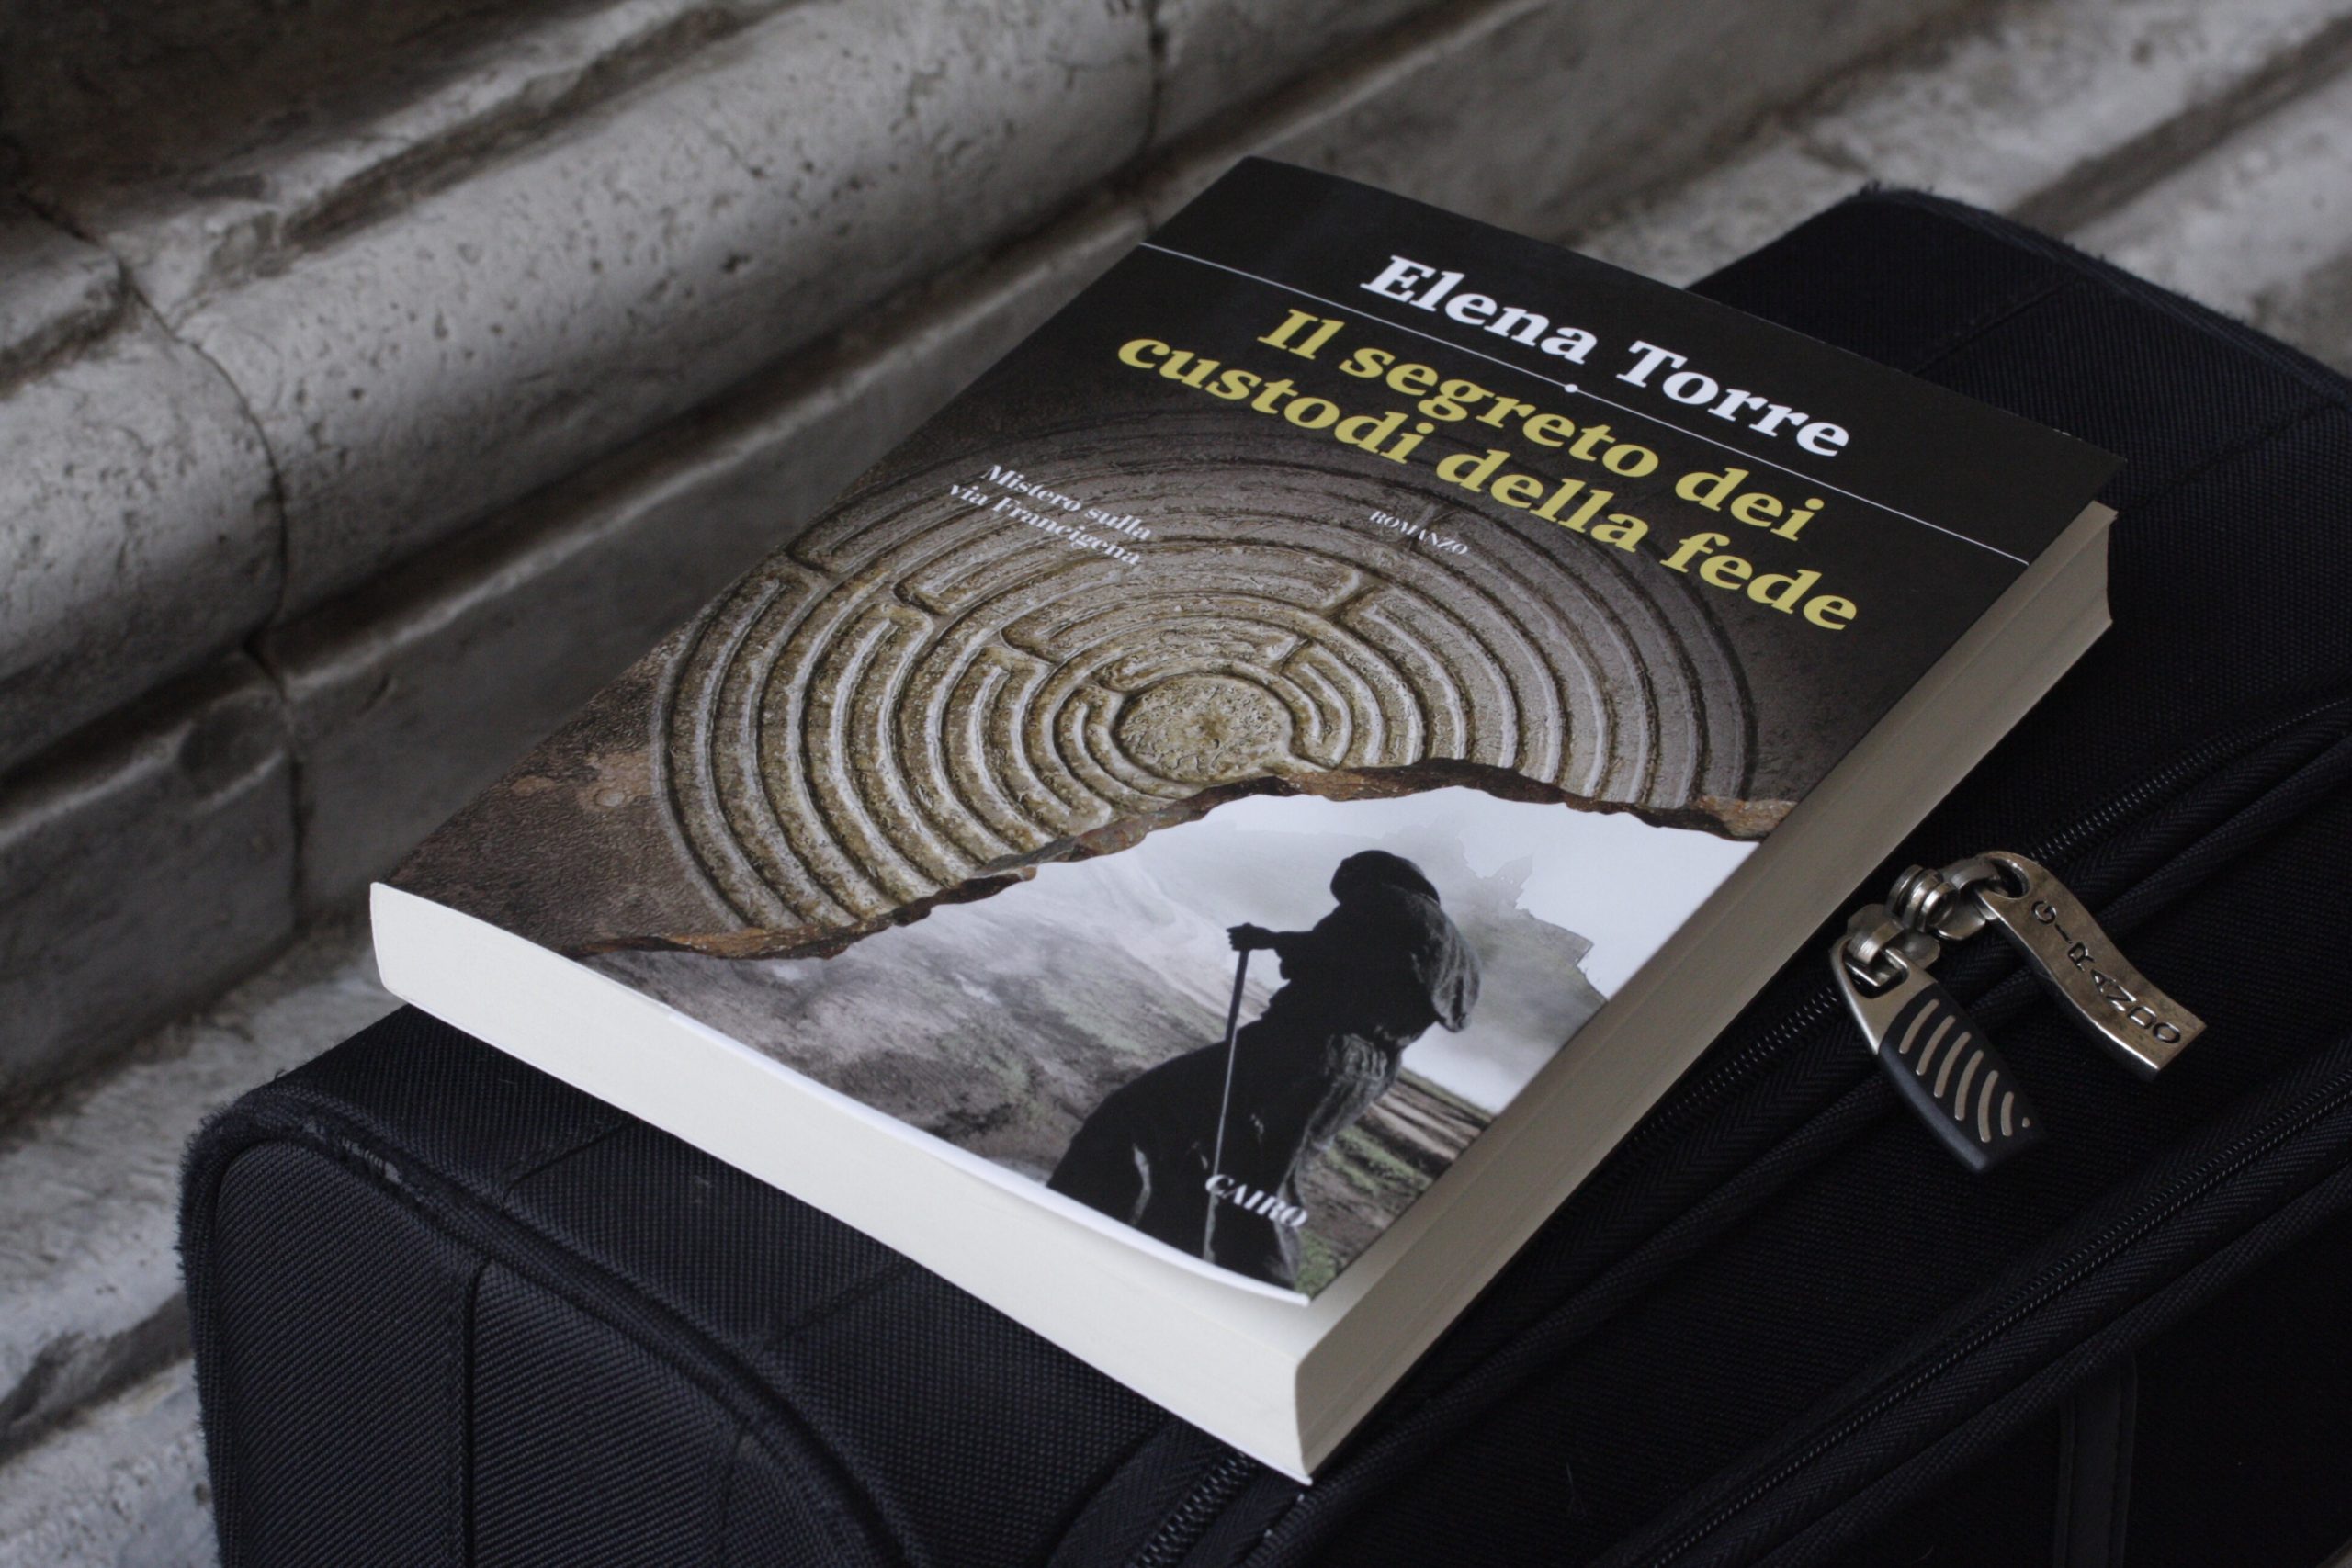 Elena Torre, Il segreto dei custodi della fede edizioni Cairo libri